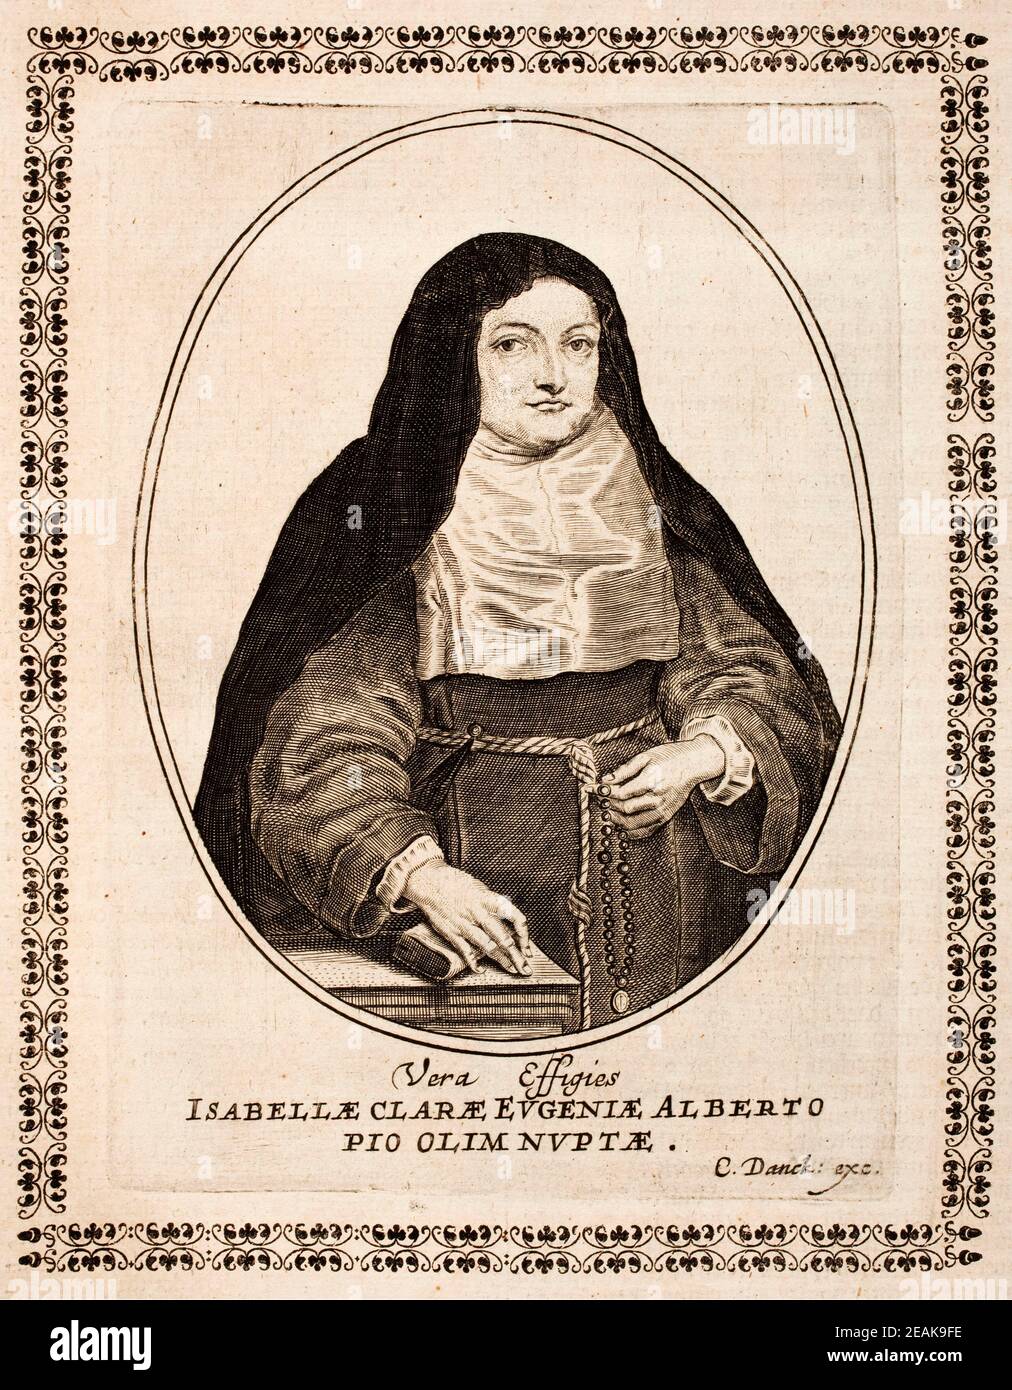 Ritratto di Isabella Clara Eugenia (1566-1633), sovrana dei Paesi Bassi spagnoli nei Paesi Bassi e nel nord della Francia moderna, insieme con l'arguzia Foto Stock